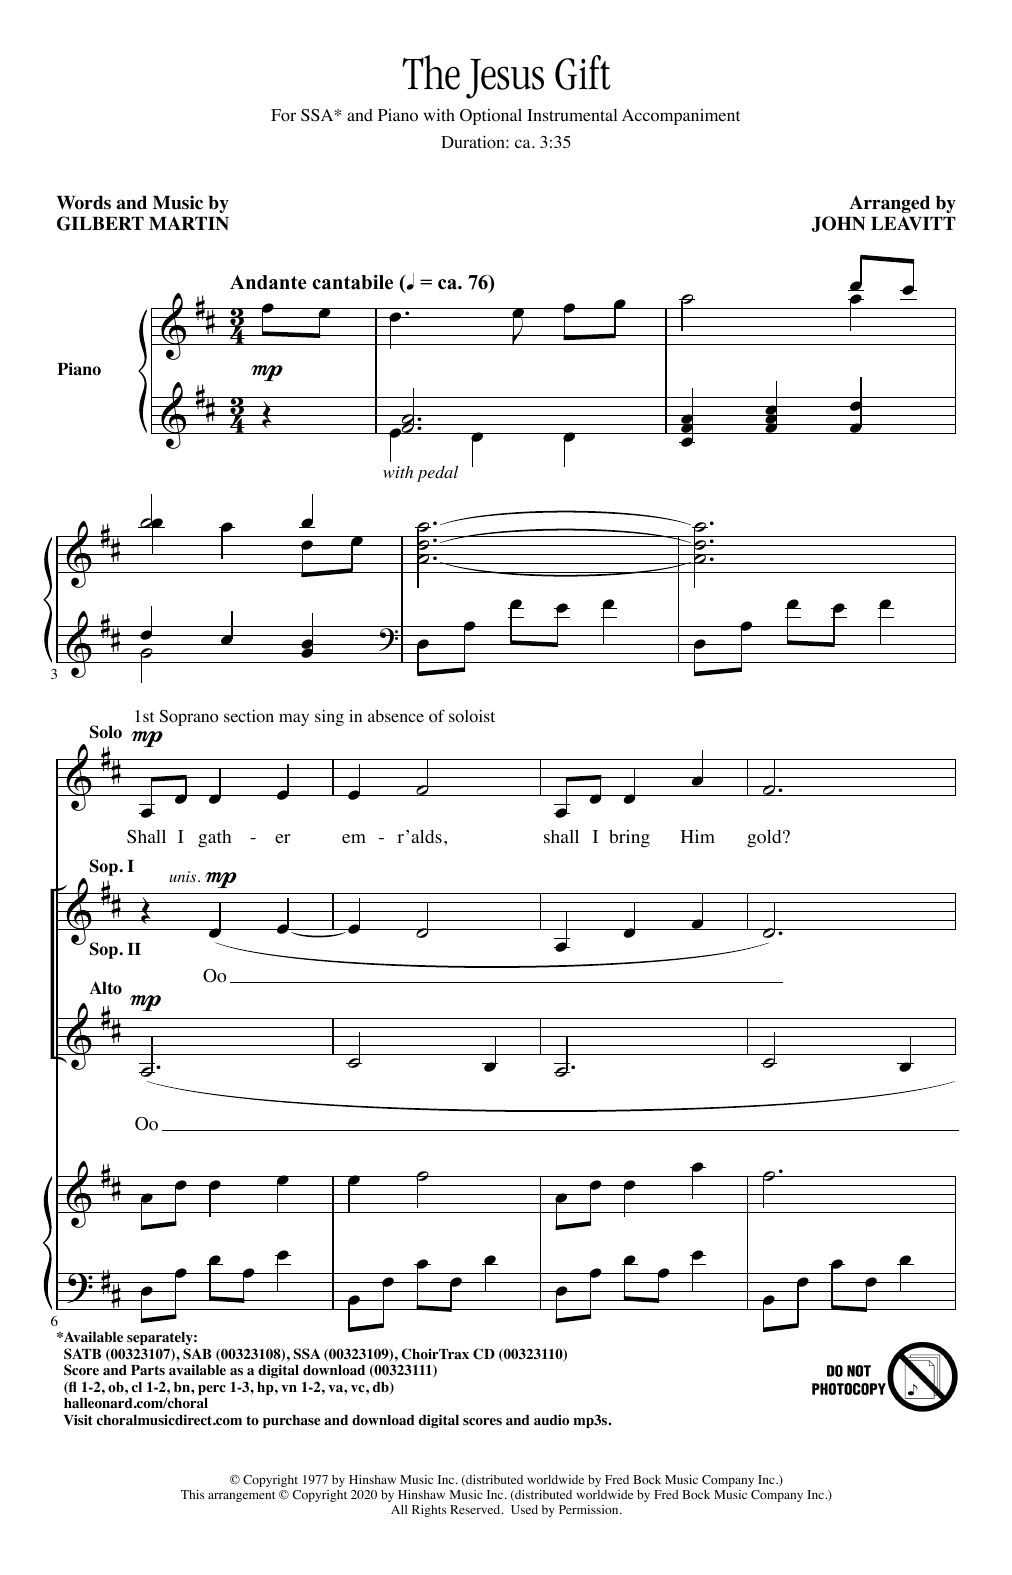 Gilbert Martin The Jesus Gift (arr. John Leavitt) sheet music notes and chords arranged for SATB Choir